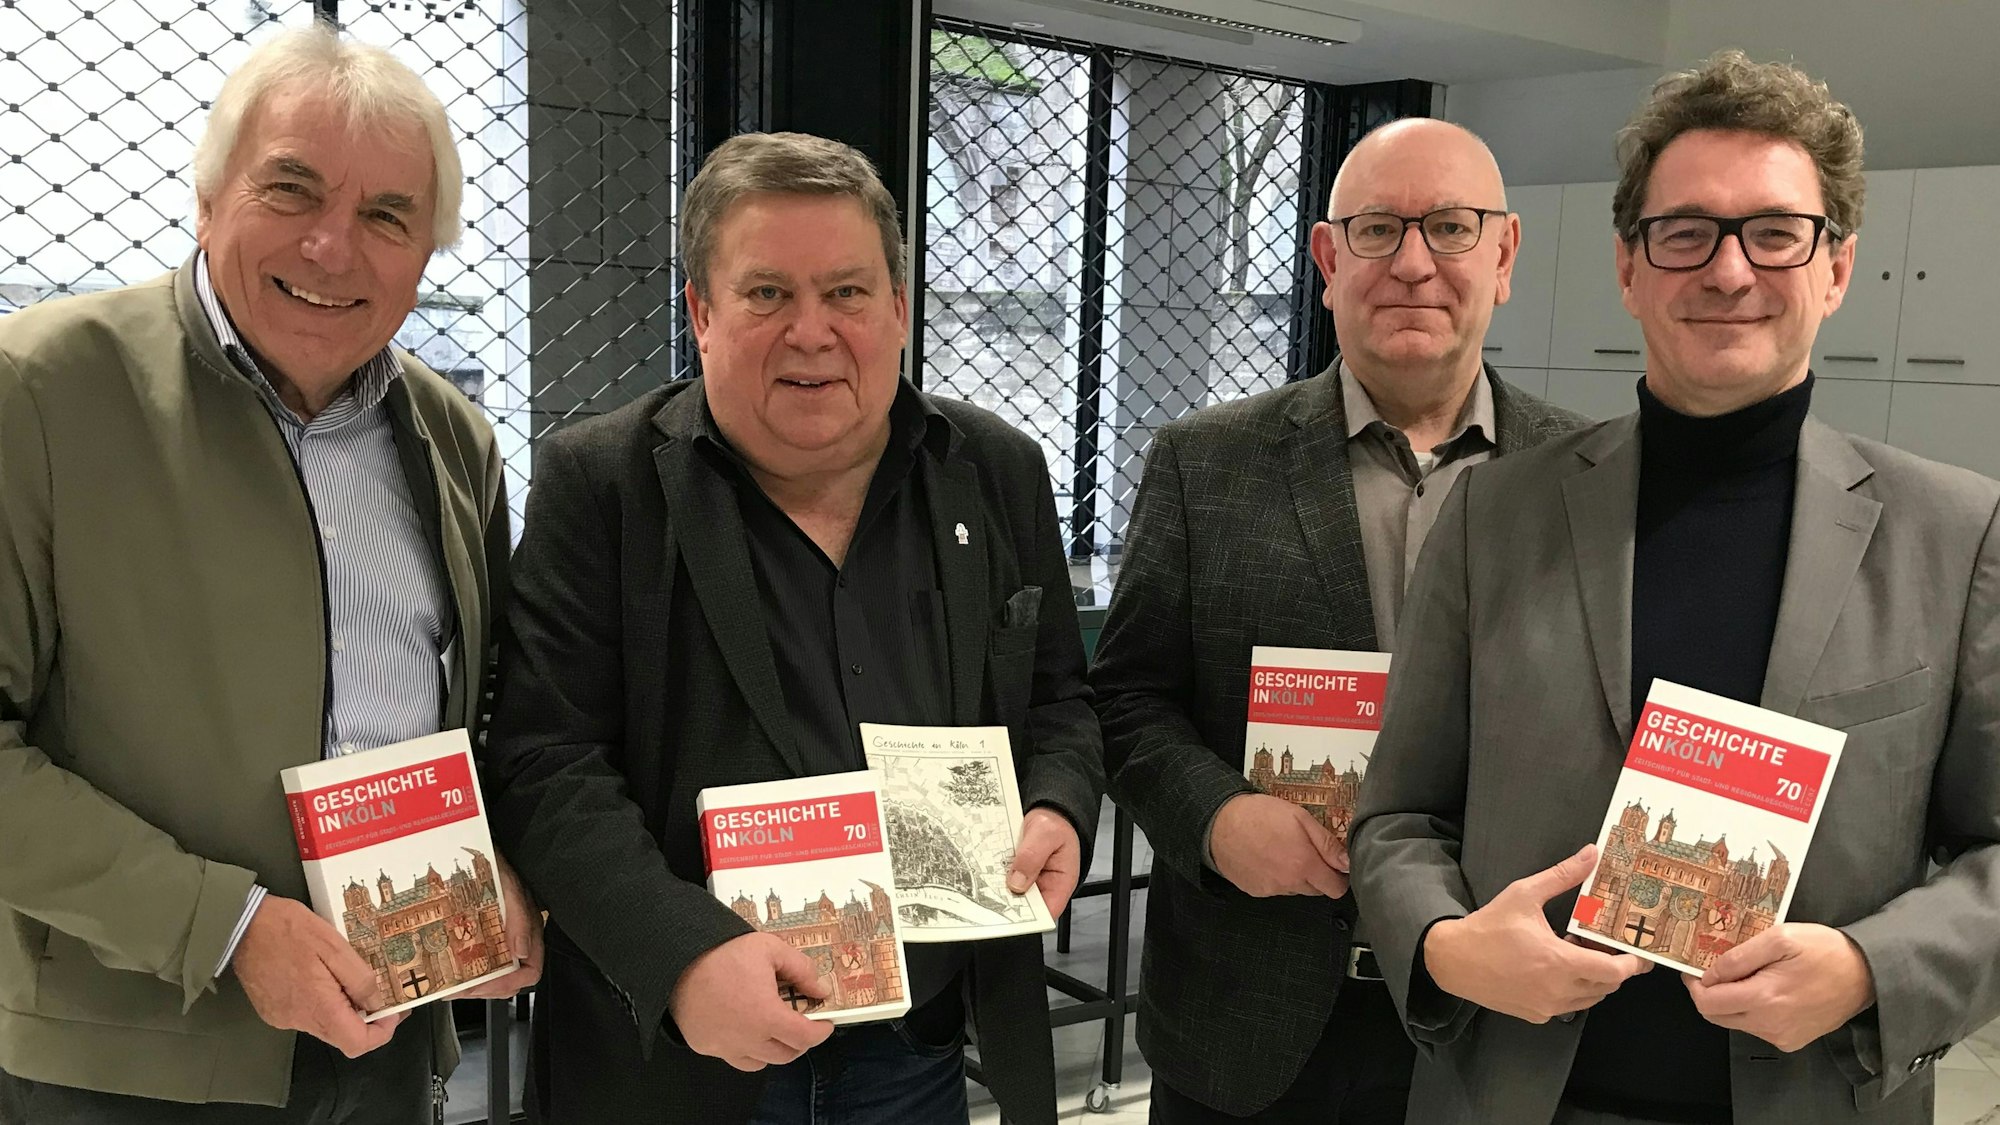 Zu sehen sind vier Männer, in den Händen halten sie die Zeitschrift „Geschichte in Köln“.